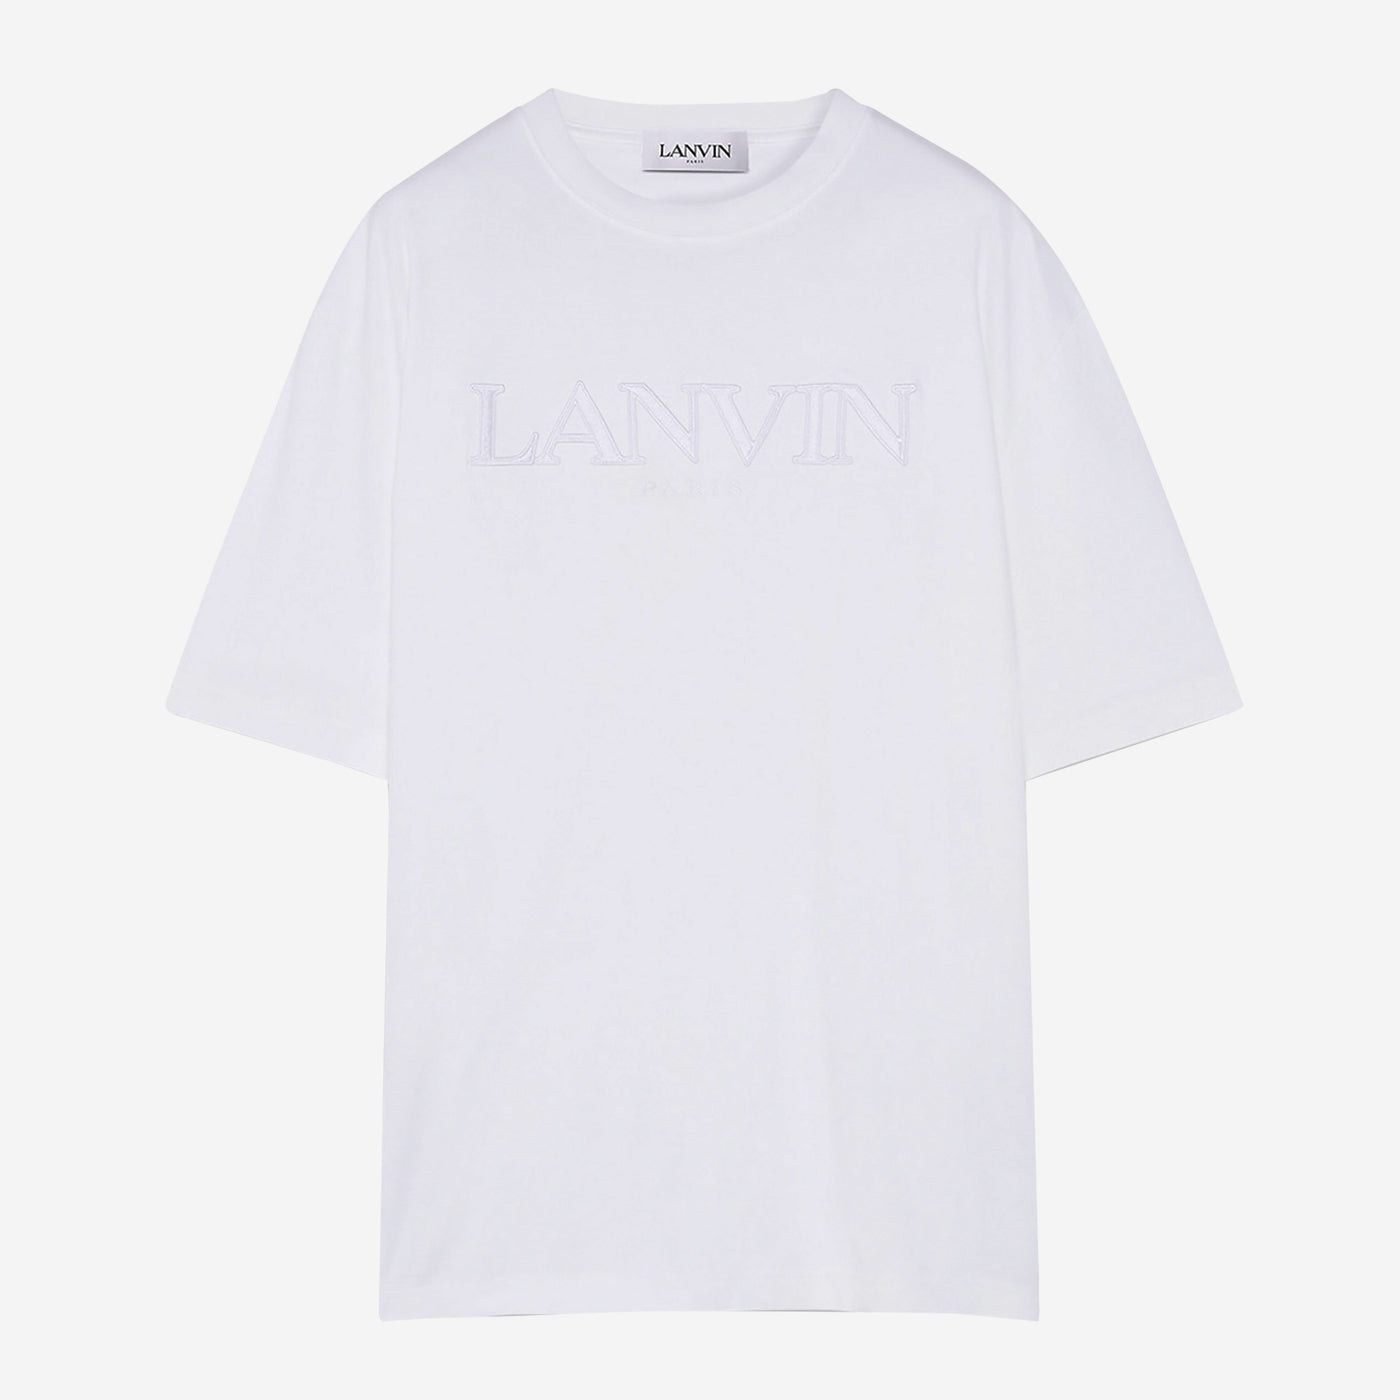 Lanvin Paris Classic T-Shirt